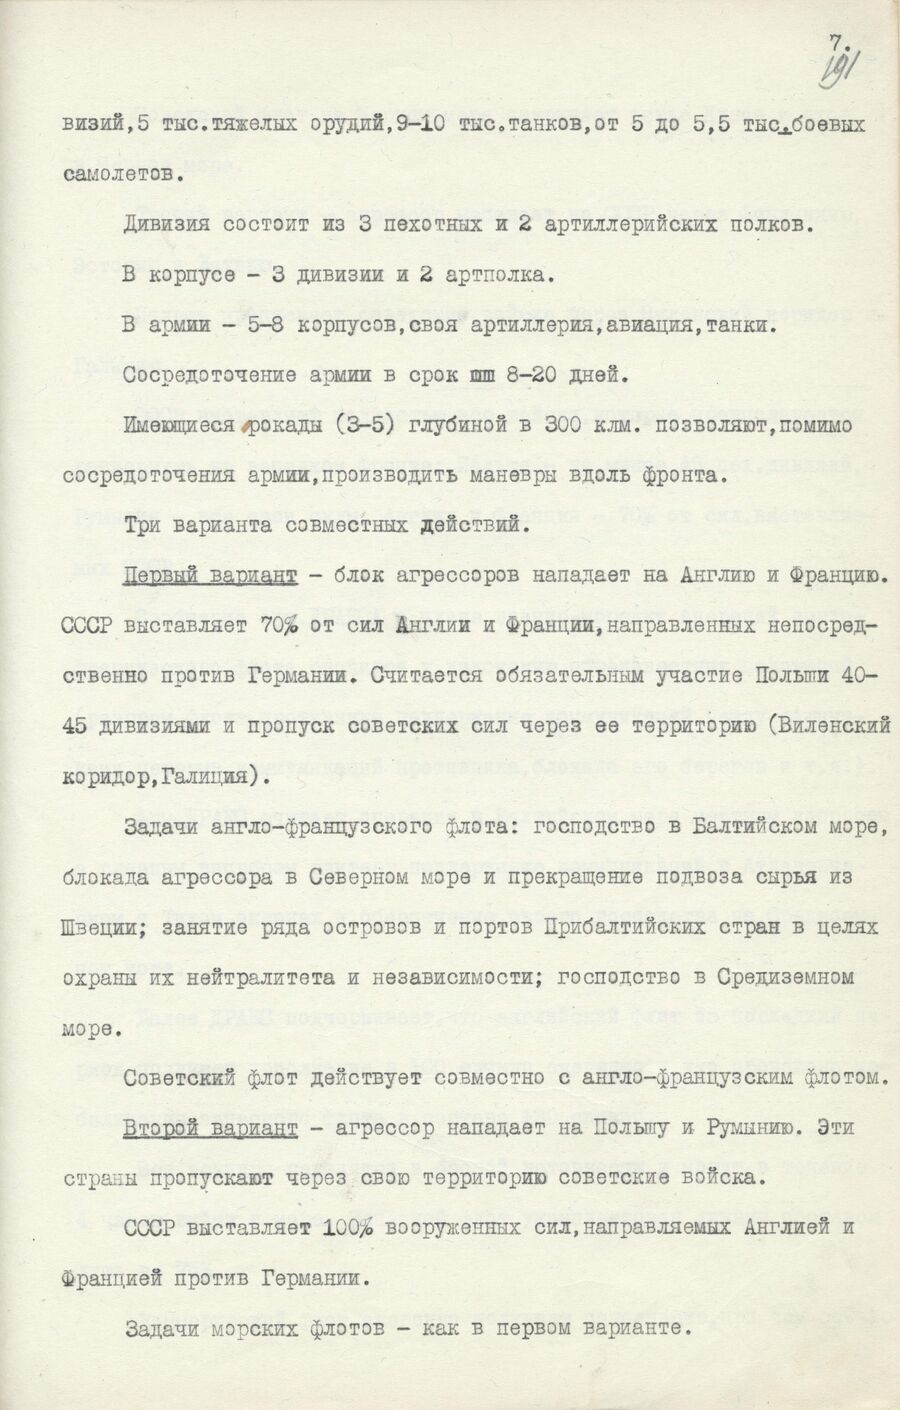 1939.08.26 Отчет о работе совещания. Лист 7